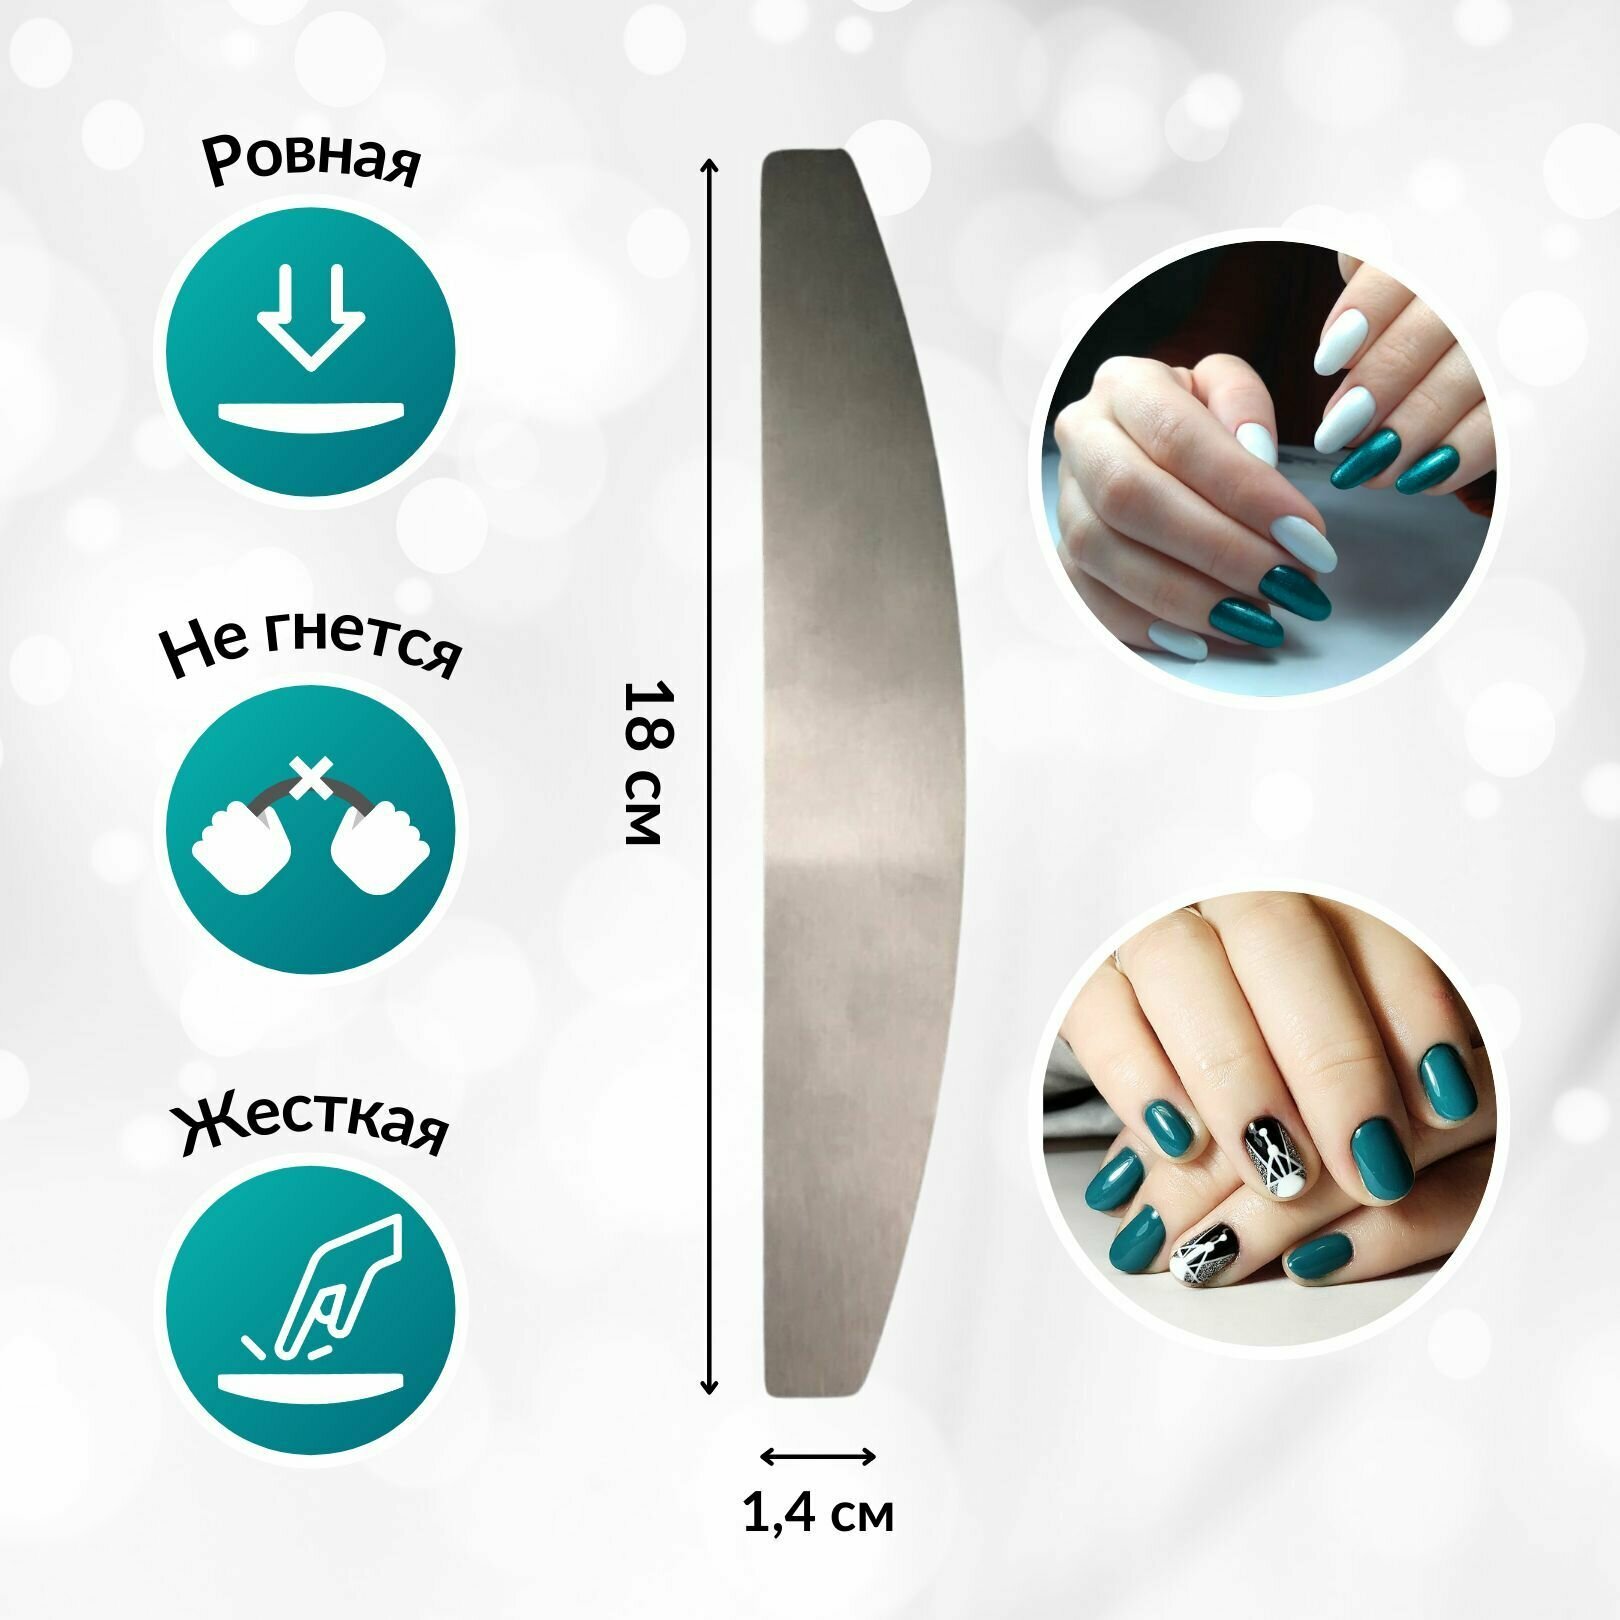 Маникюрный набор: металлическая основа для пилки для ногтей + сменные файлы для пилки, размер: 18 см. / ABRAR